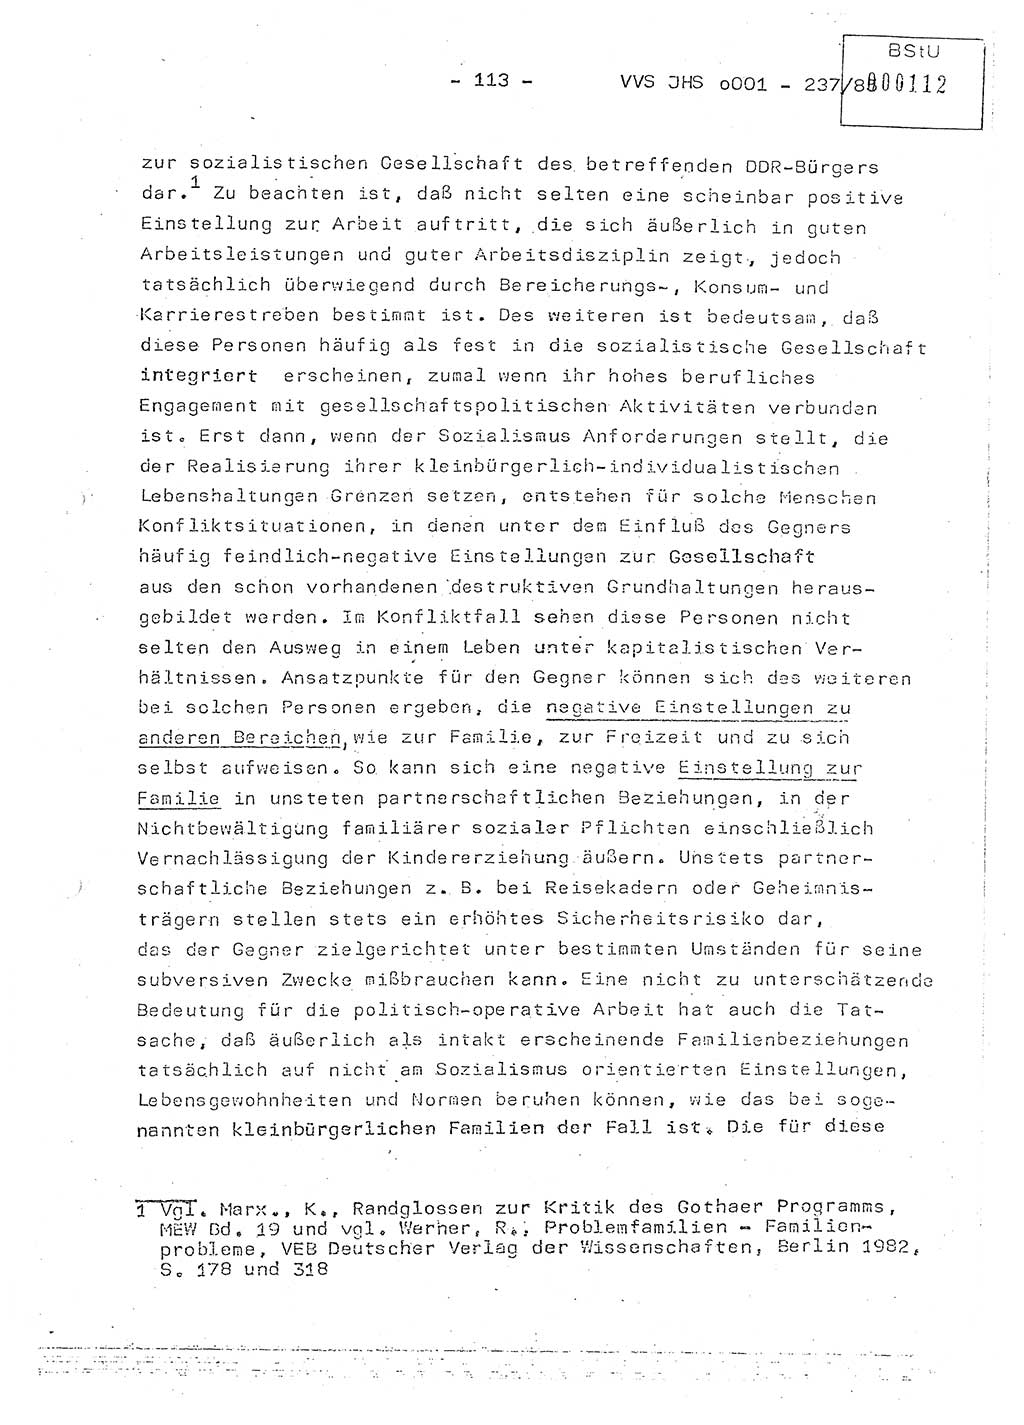 Dissertation Oberstleutnant Peter Jakulski (JHS), Oberstleutnat Christian Rudolph (HA Ⅸ), Major Horst Böttger (ZMD), Major Wolfgang Grüneberg (JHS), Major Albert Meutsch (JHS), Ministerium für Staatssicherheit (MfS) [Deutsche Demokratische Republik (DDR)], Juristische Hochschule (JHS), Vertrauliche Verschlußsache (VVS) o001-237/85, Potsdam 1985, Seite 113 (Diss. MfS DDR JHS VVS o001-237/85 1985, S. 113)